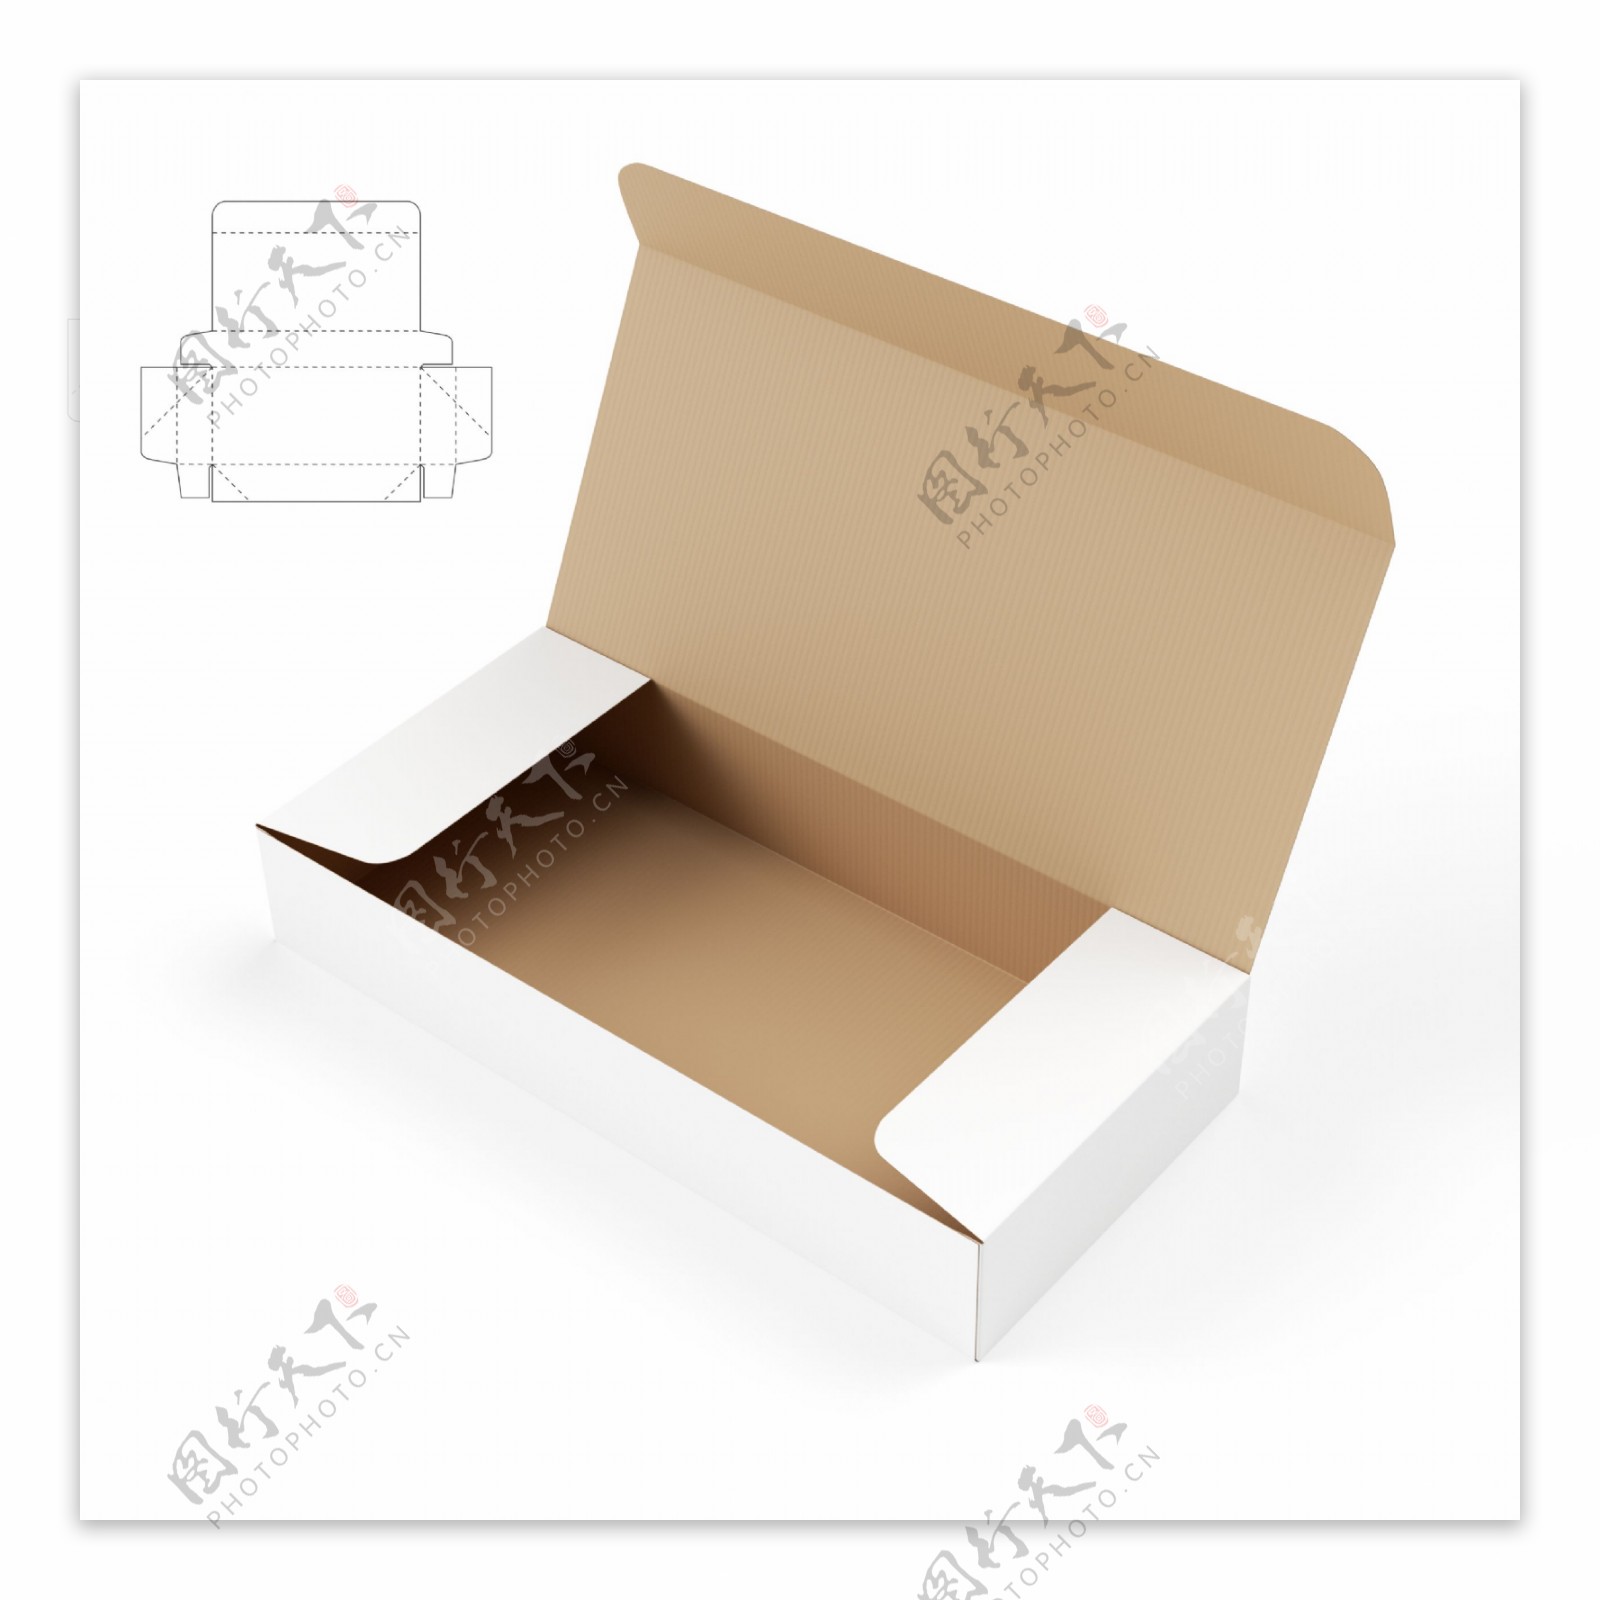 产品包装盒与平面图